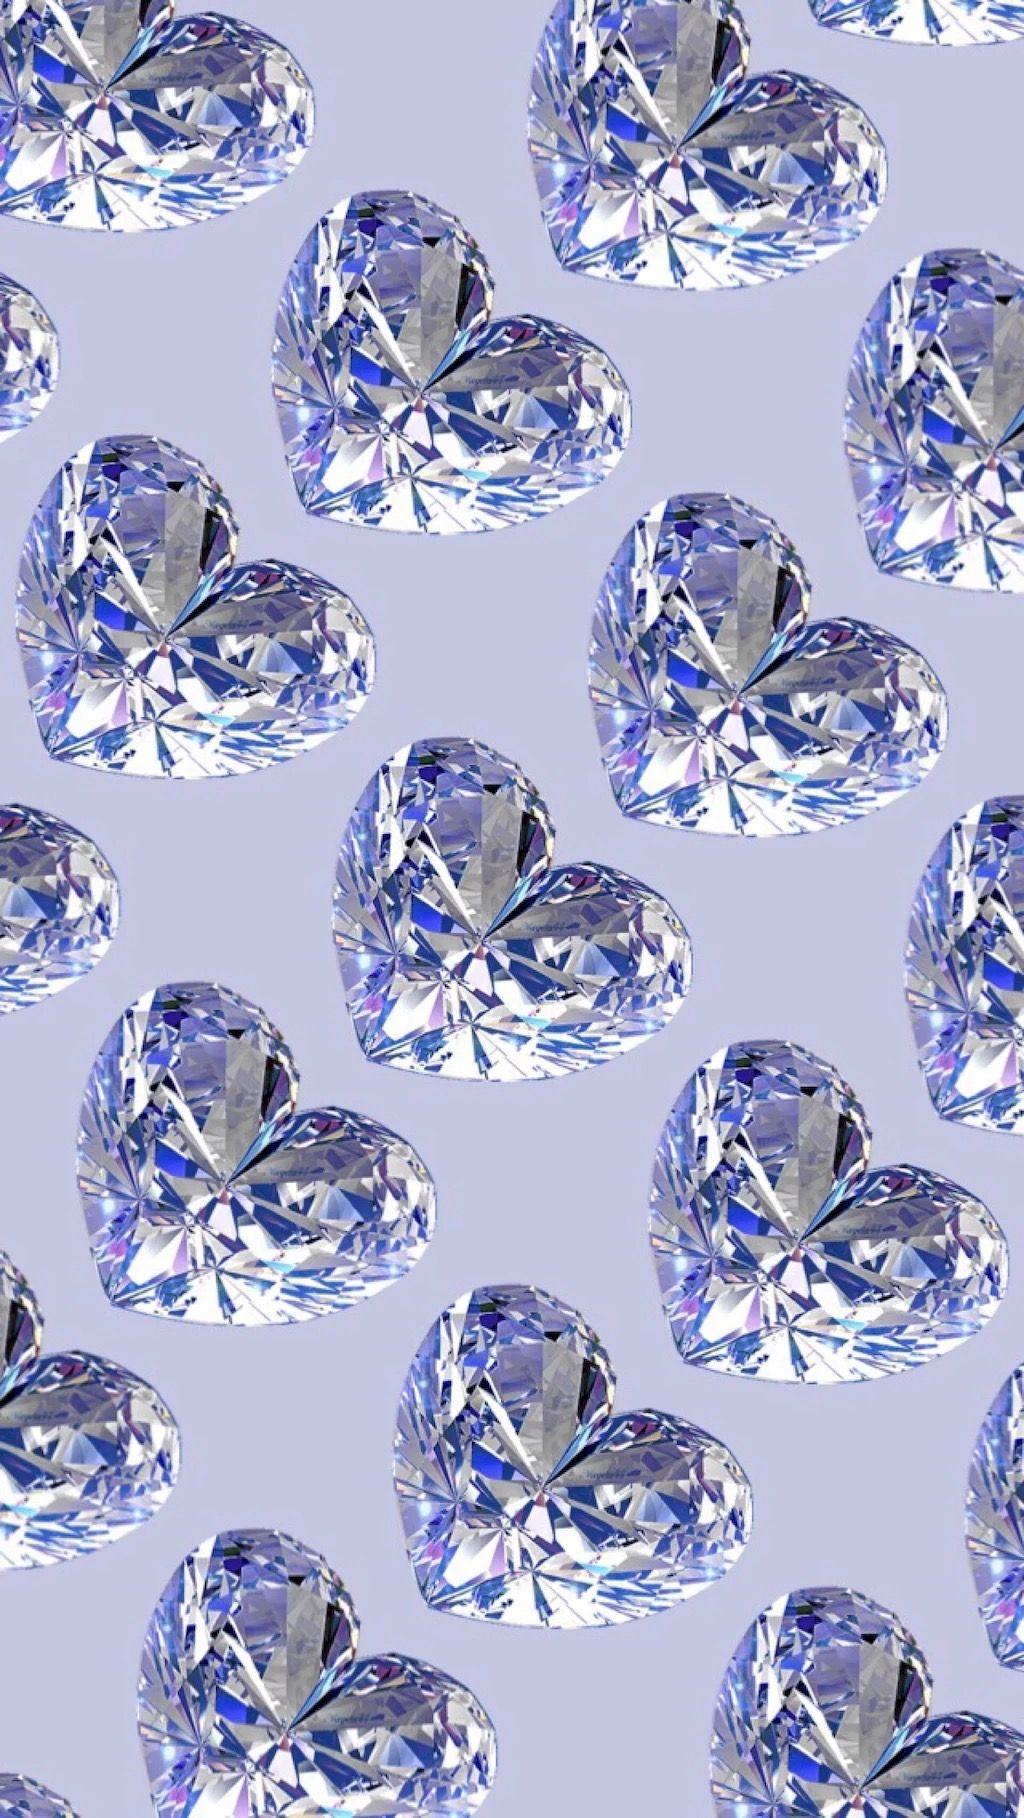 Diamond Hearts Wallpaper.By Artist Unknown. wallpaper in 2019